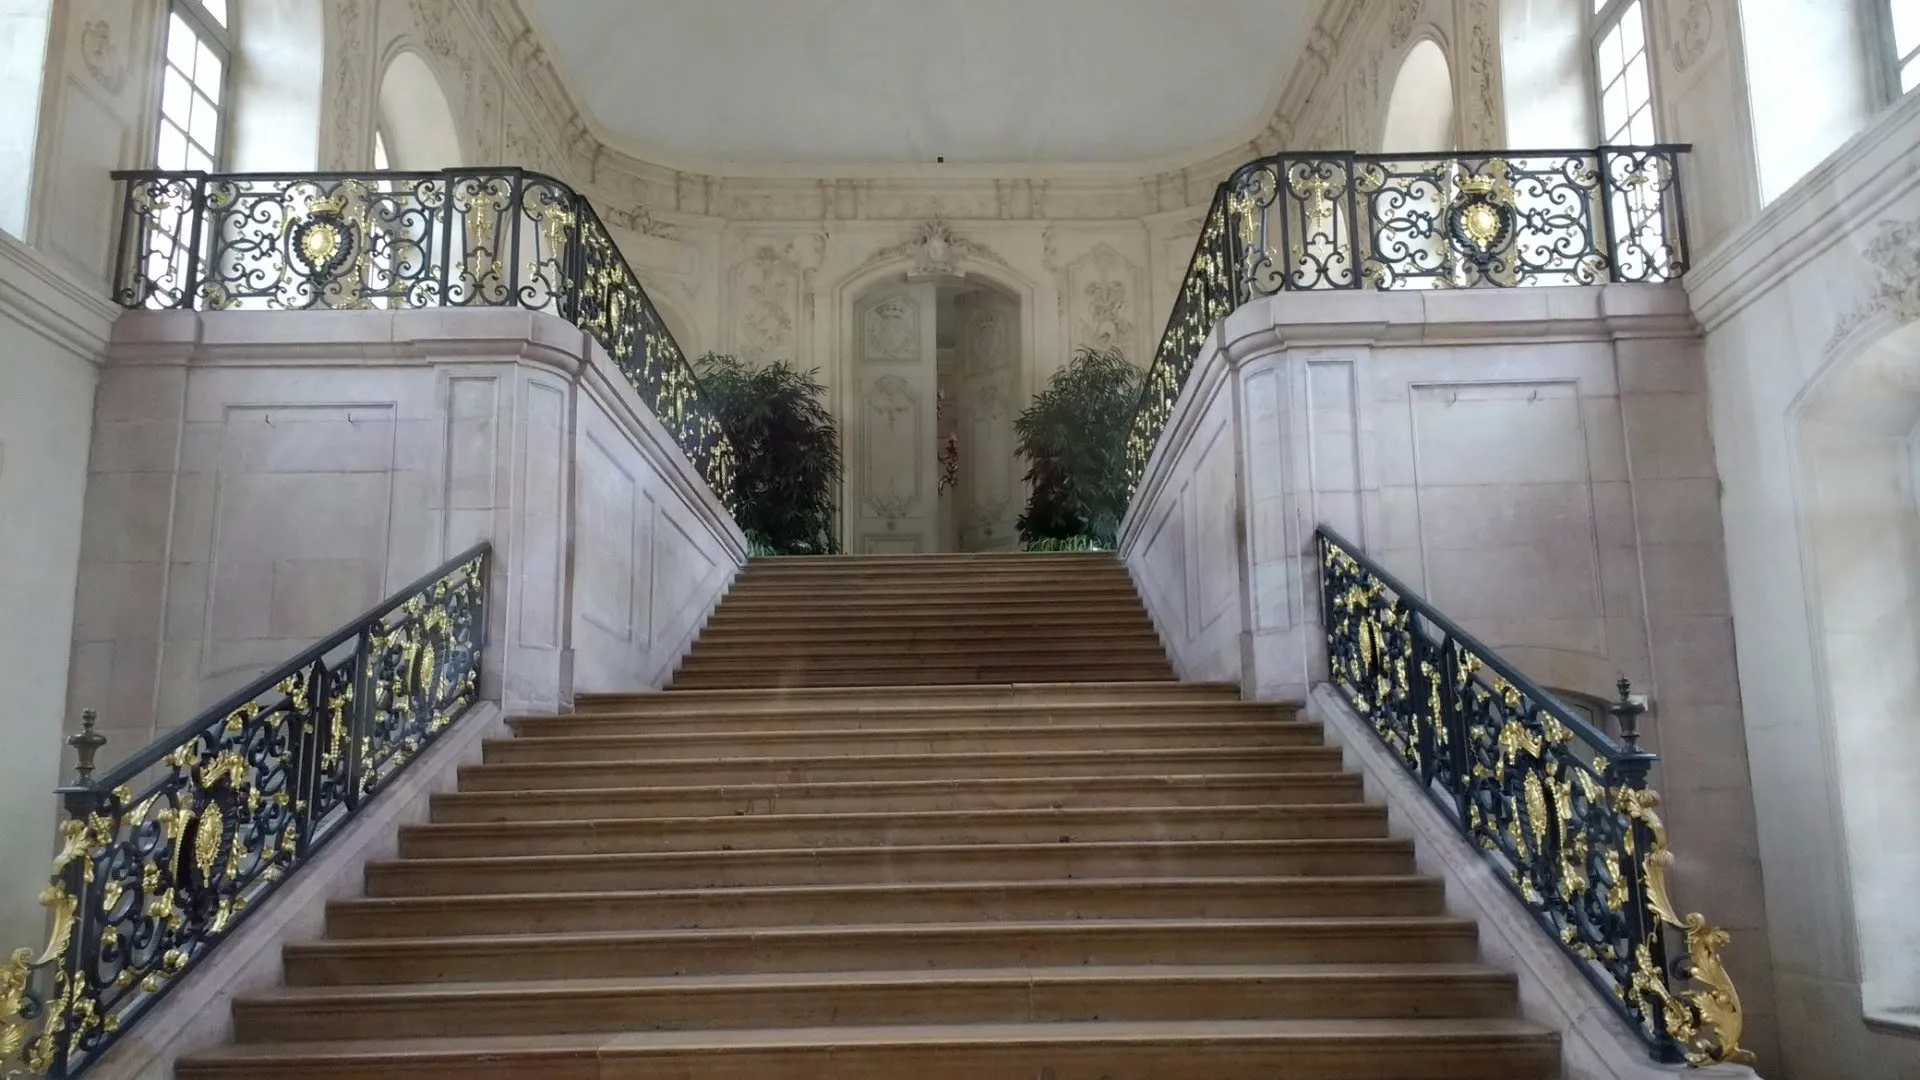 Palais des Ducs